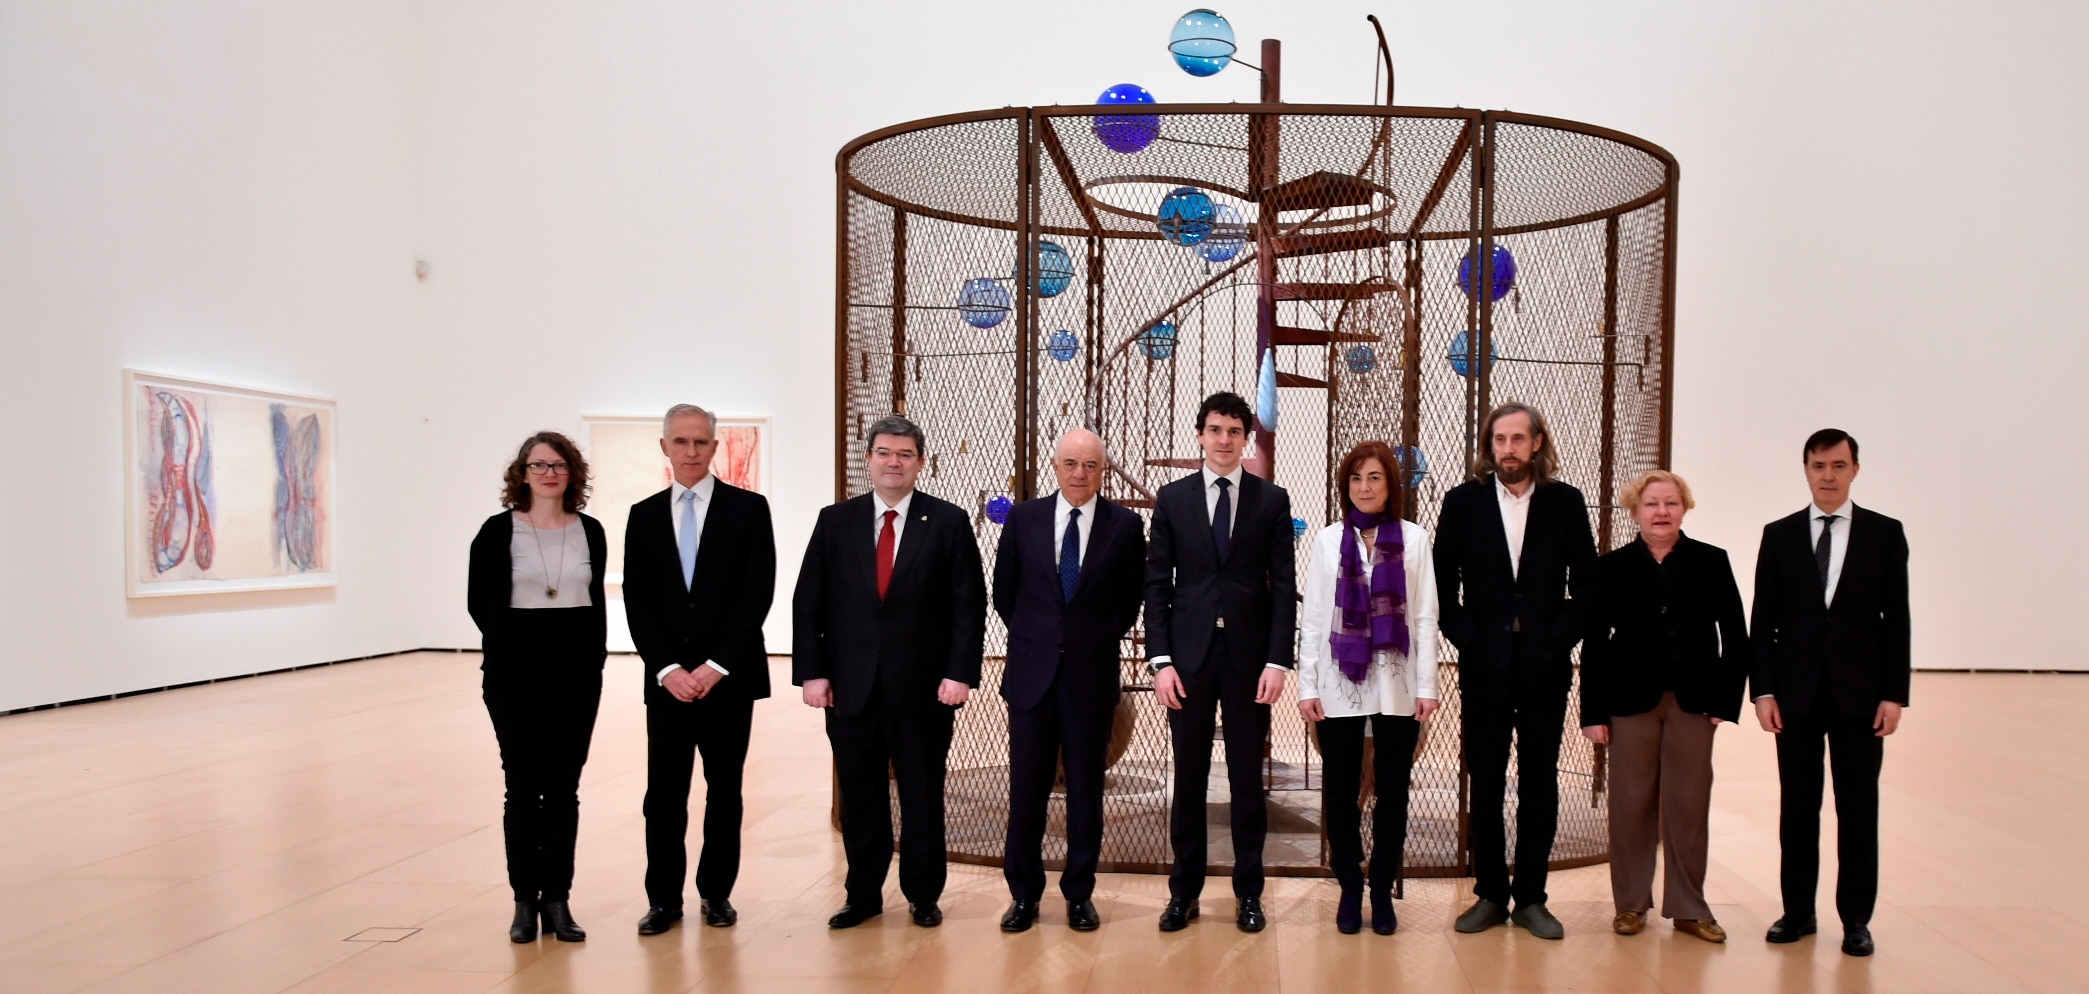 Imagen Inauguración de la exposición de Louise Bourgeois en el Museo Guggenheim de Bilbao, patrocinada por la Fundación BBVA